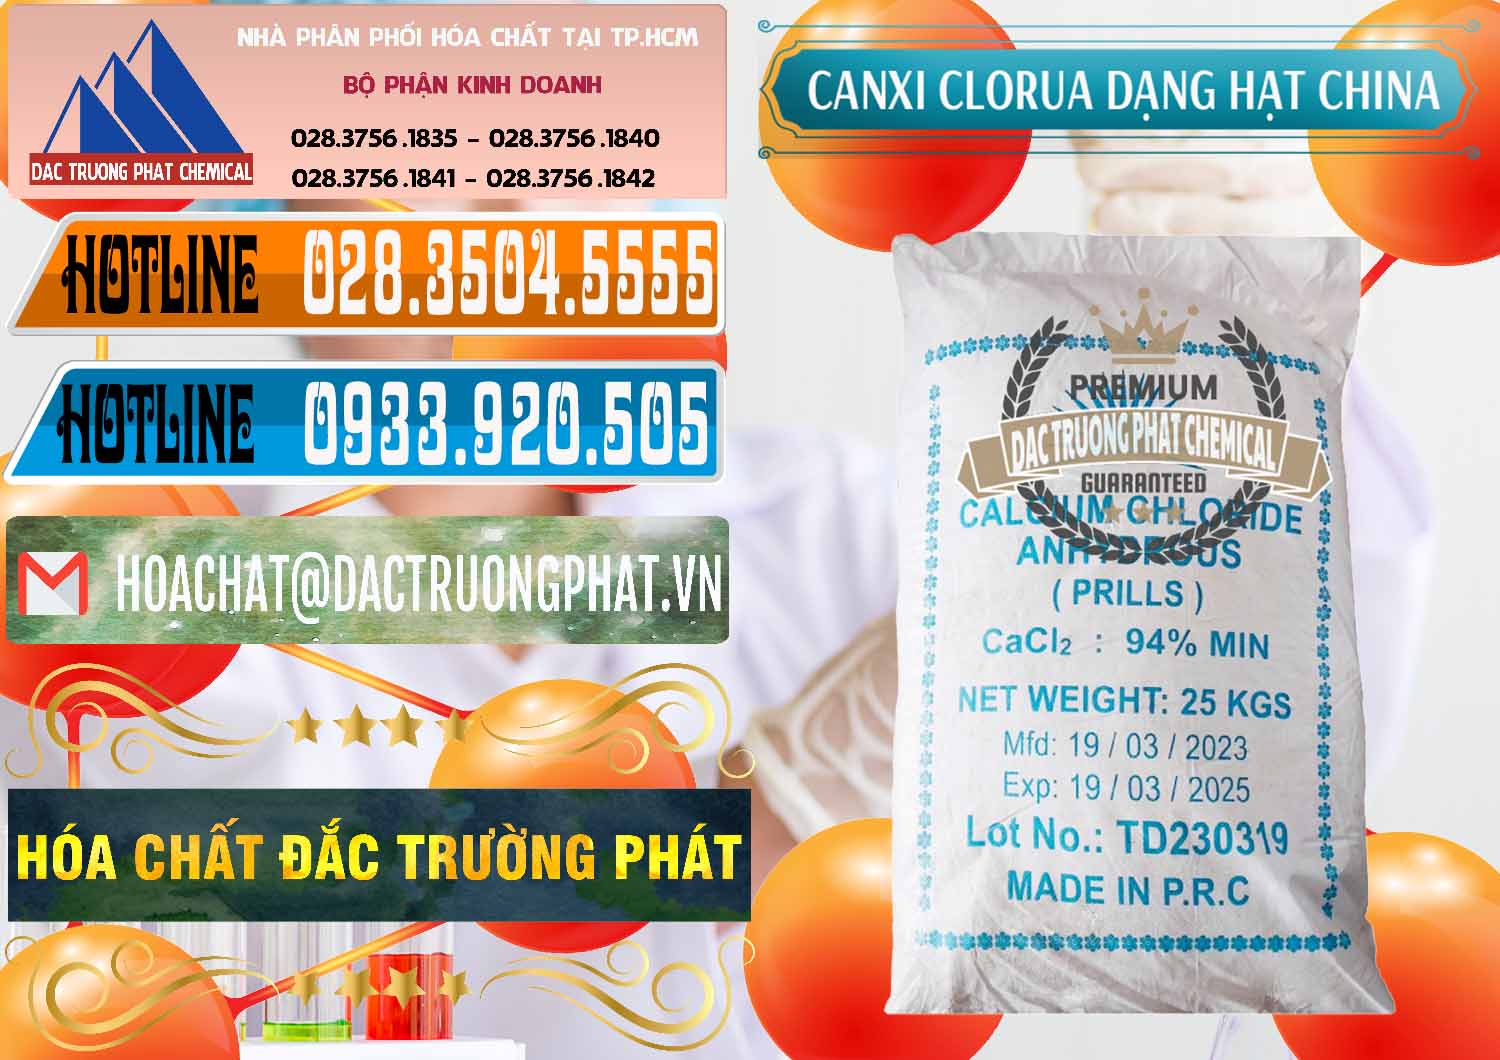 Công ty chuyên cung ứng - bán CaCl2 – Canxi Clorua 94% Dạng Hạt Trung Quốc China - 0373 - Nhà cung cấp & bán hóa chất tại TP.HCM - stmp.net